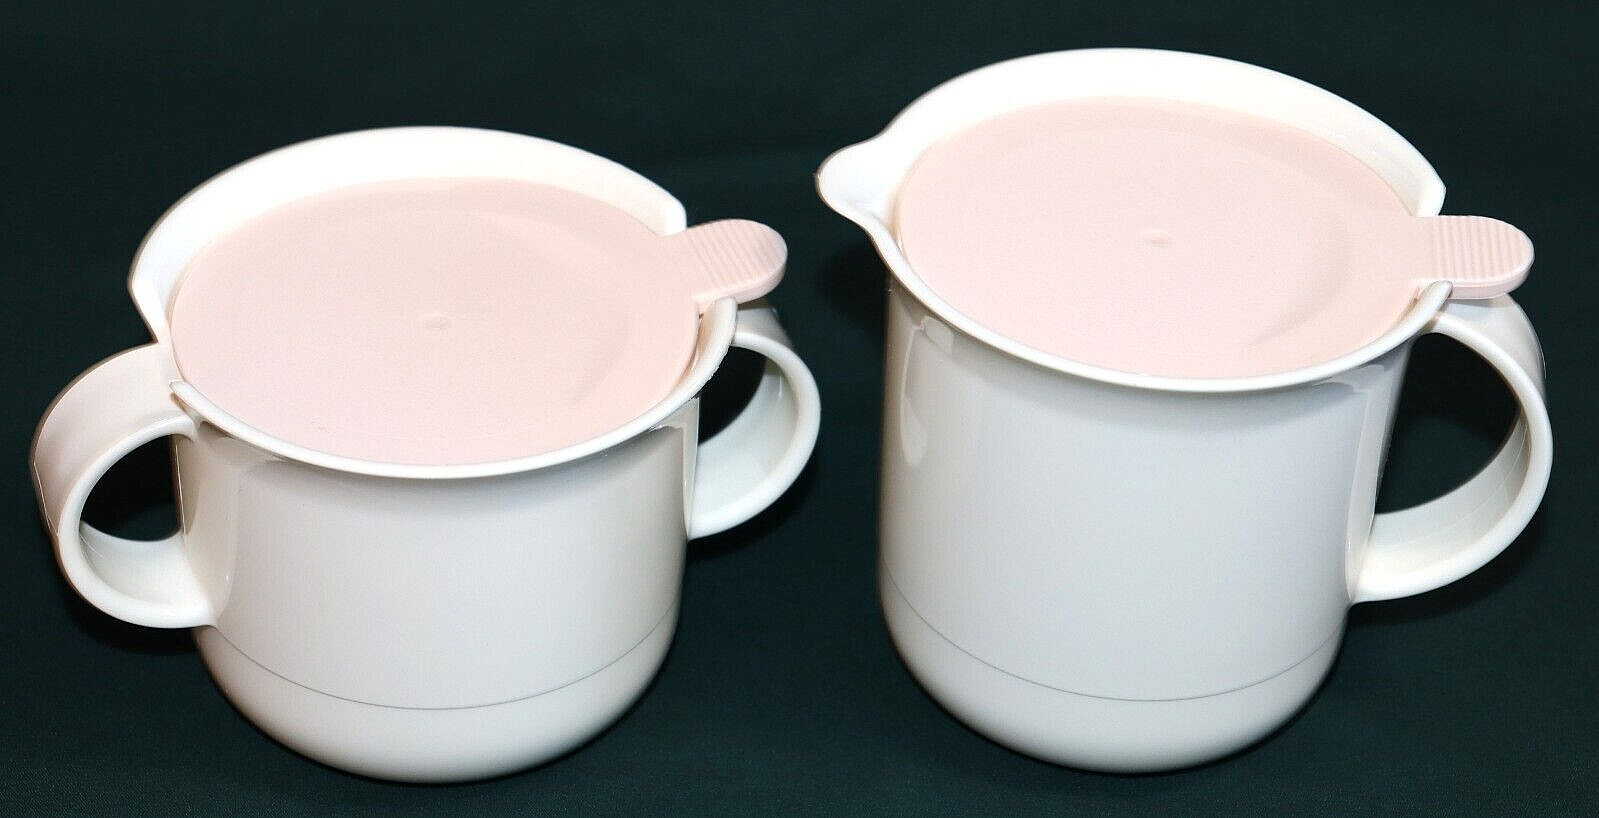 Vintage Tupperware Pale Pink & White Sugar & Creamer Set #2309 & #2310